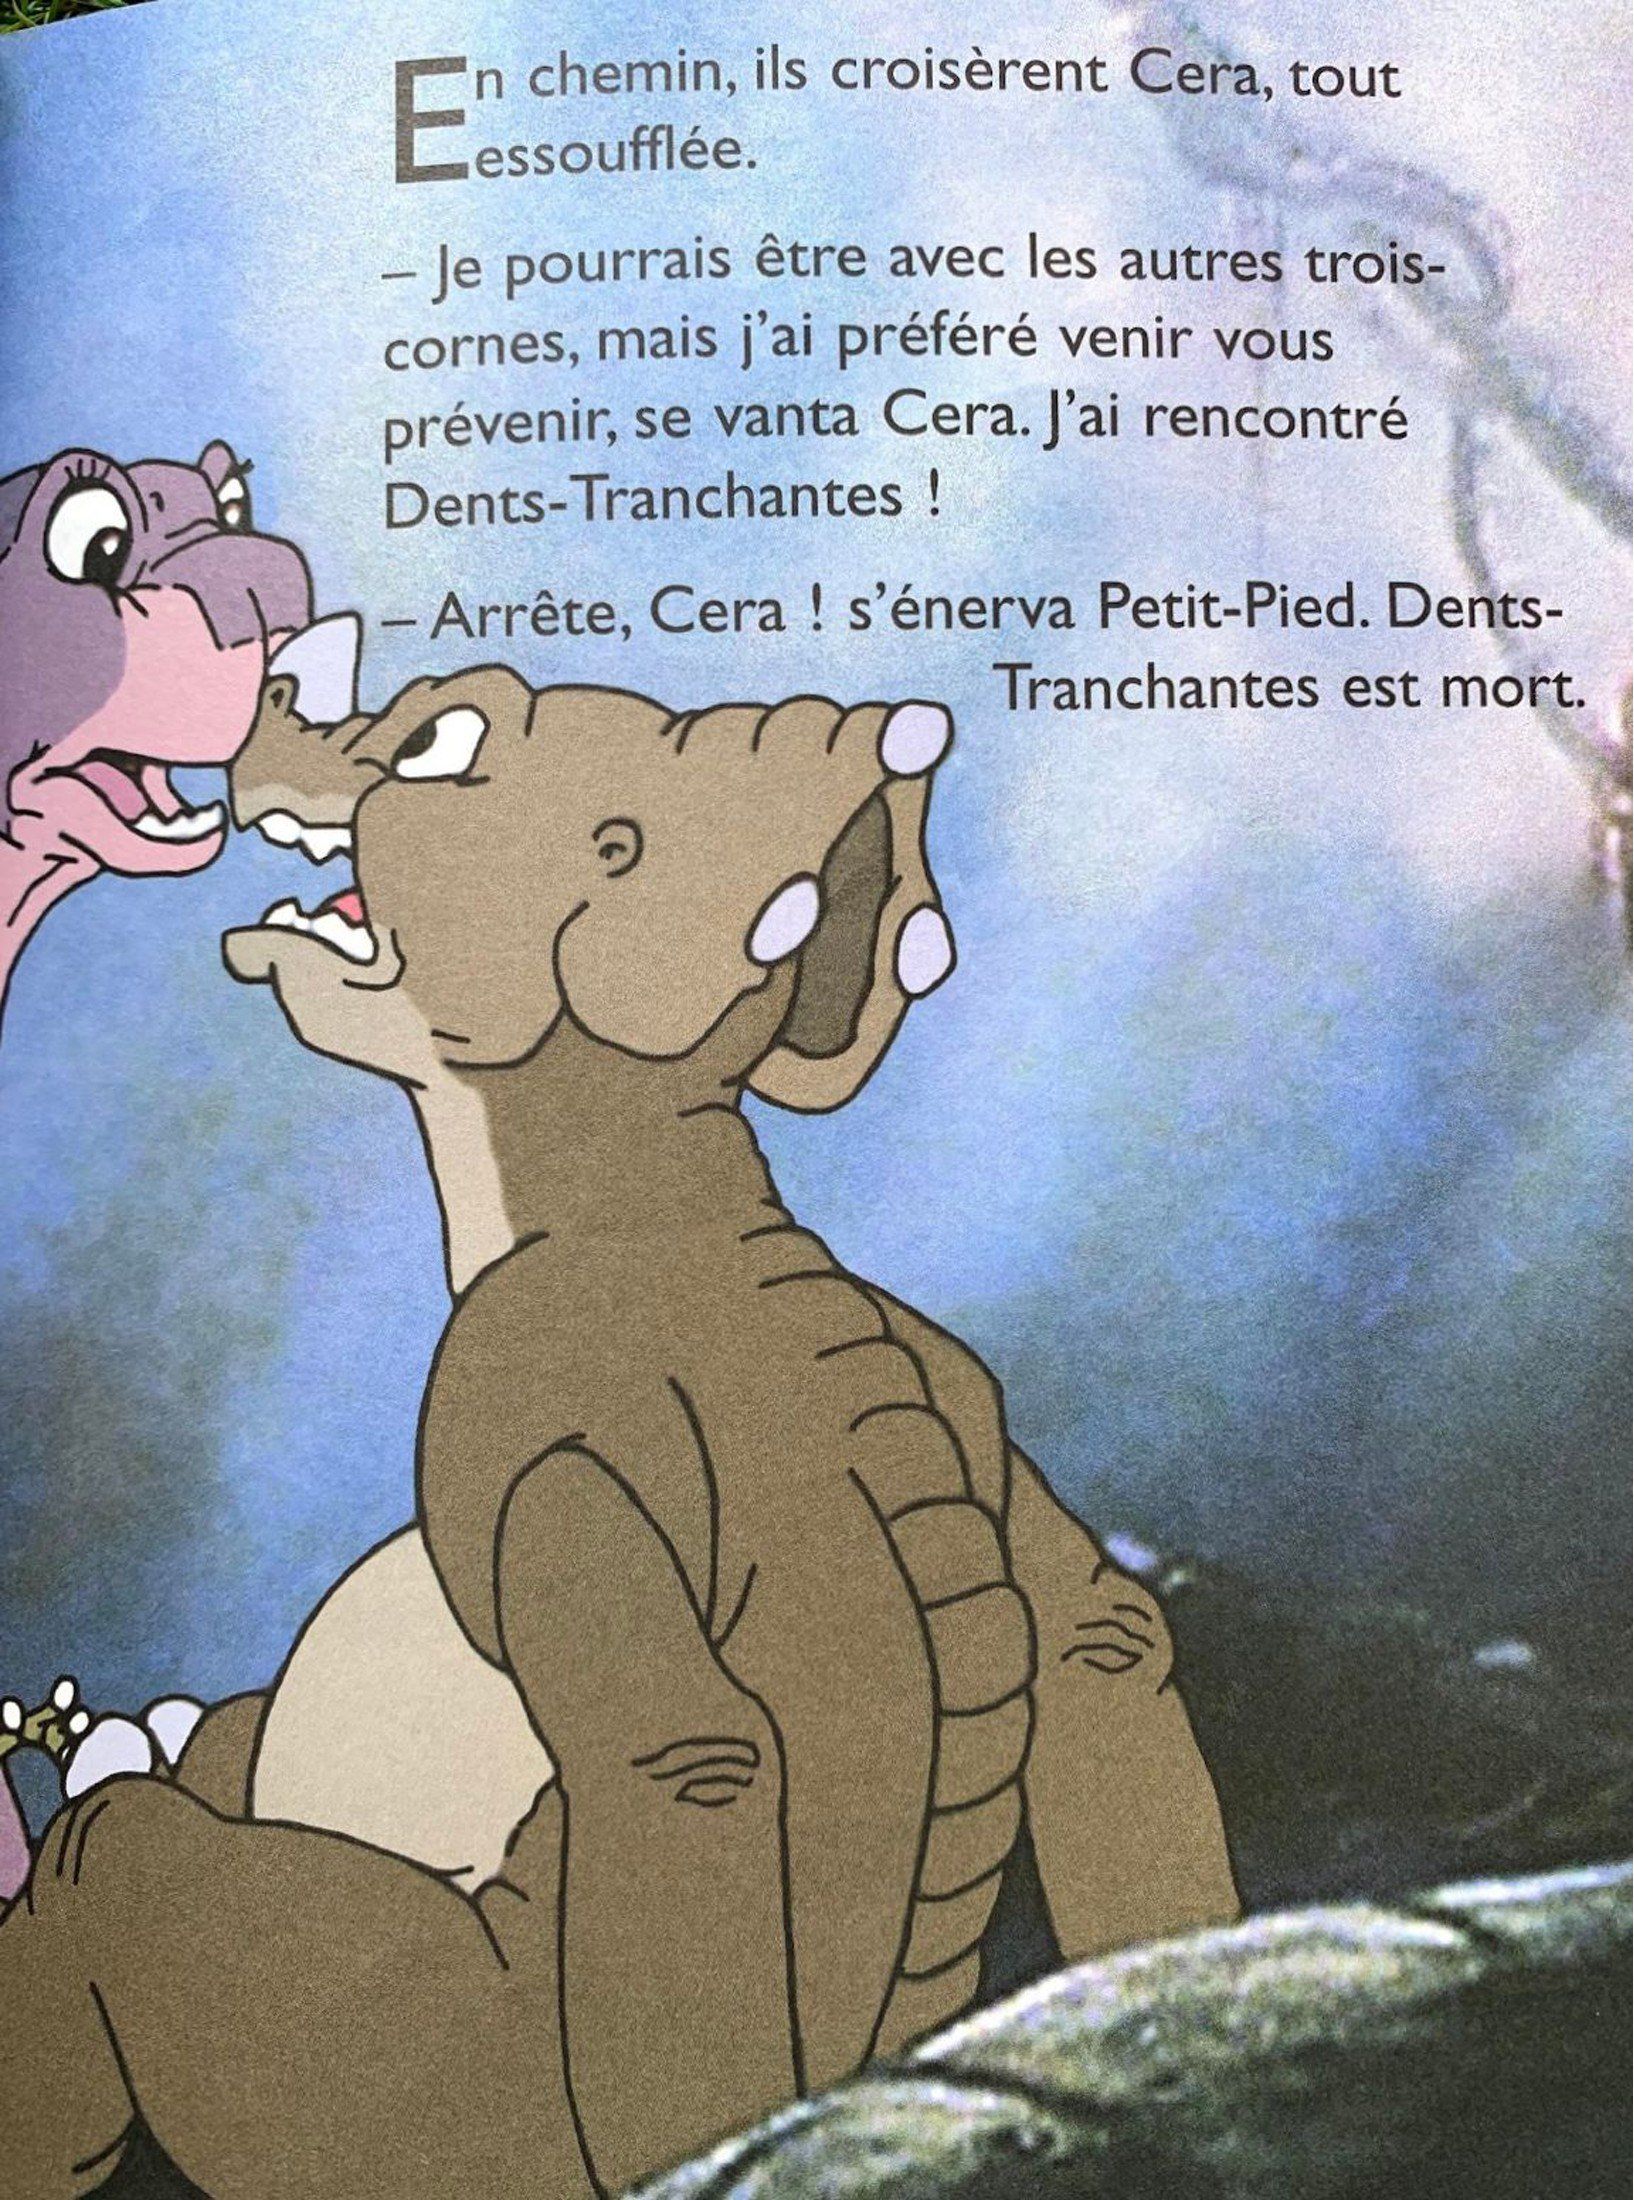 Le Petit Dinosaure - La Vallée des Merveilles Like New, 3-5 Years Recuddles.ch  (7057658118329)